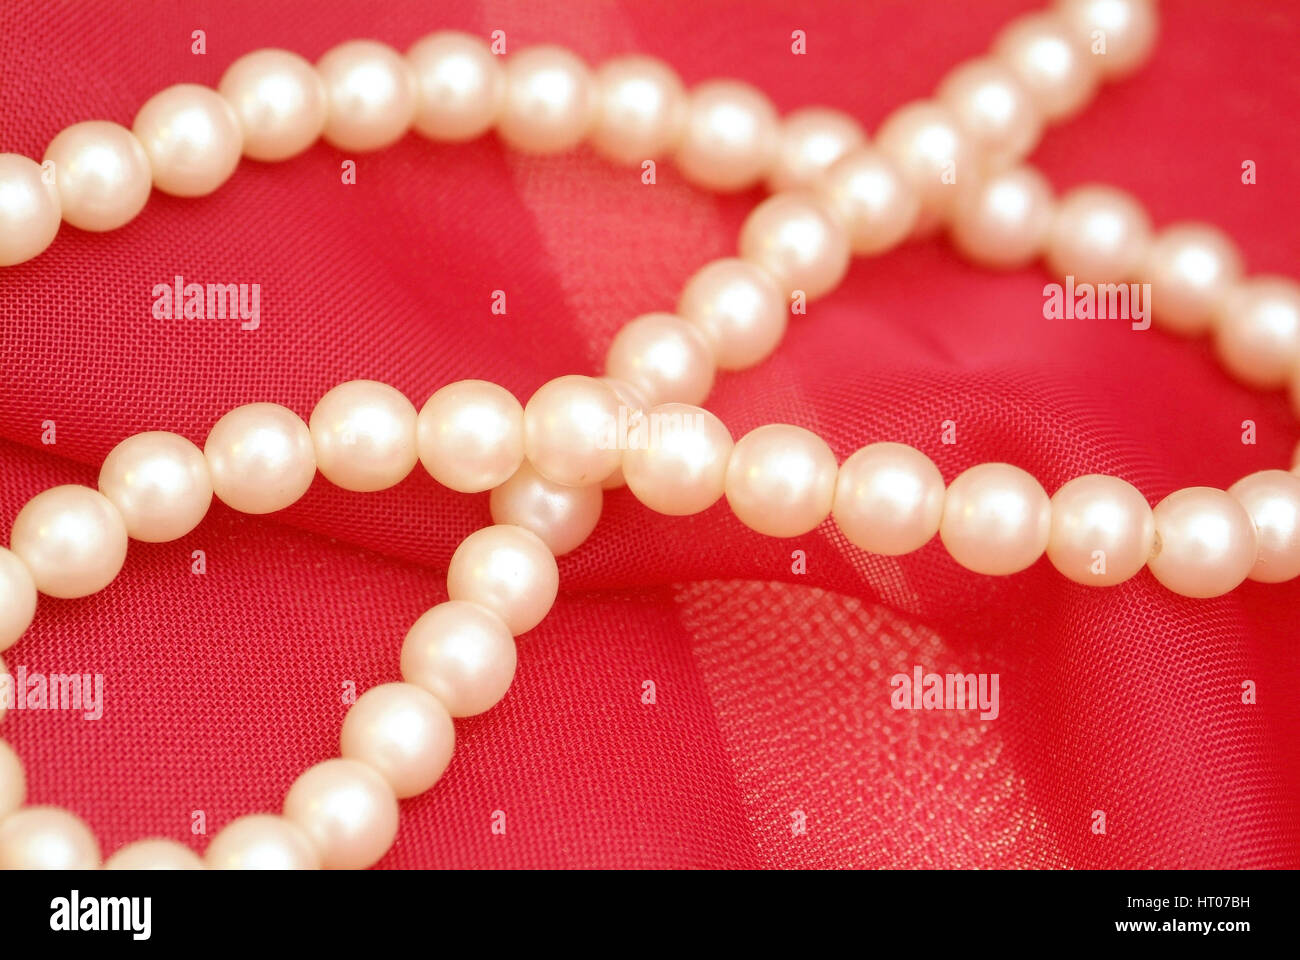 Perlenkette, Zuchtperlen - Perle necklet Foto Stock